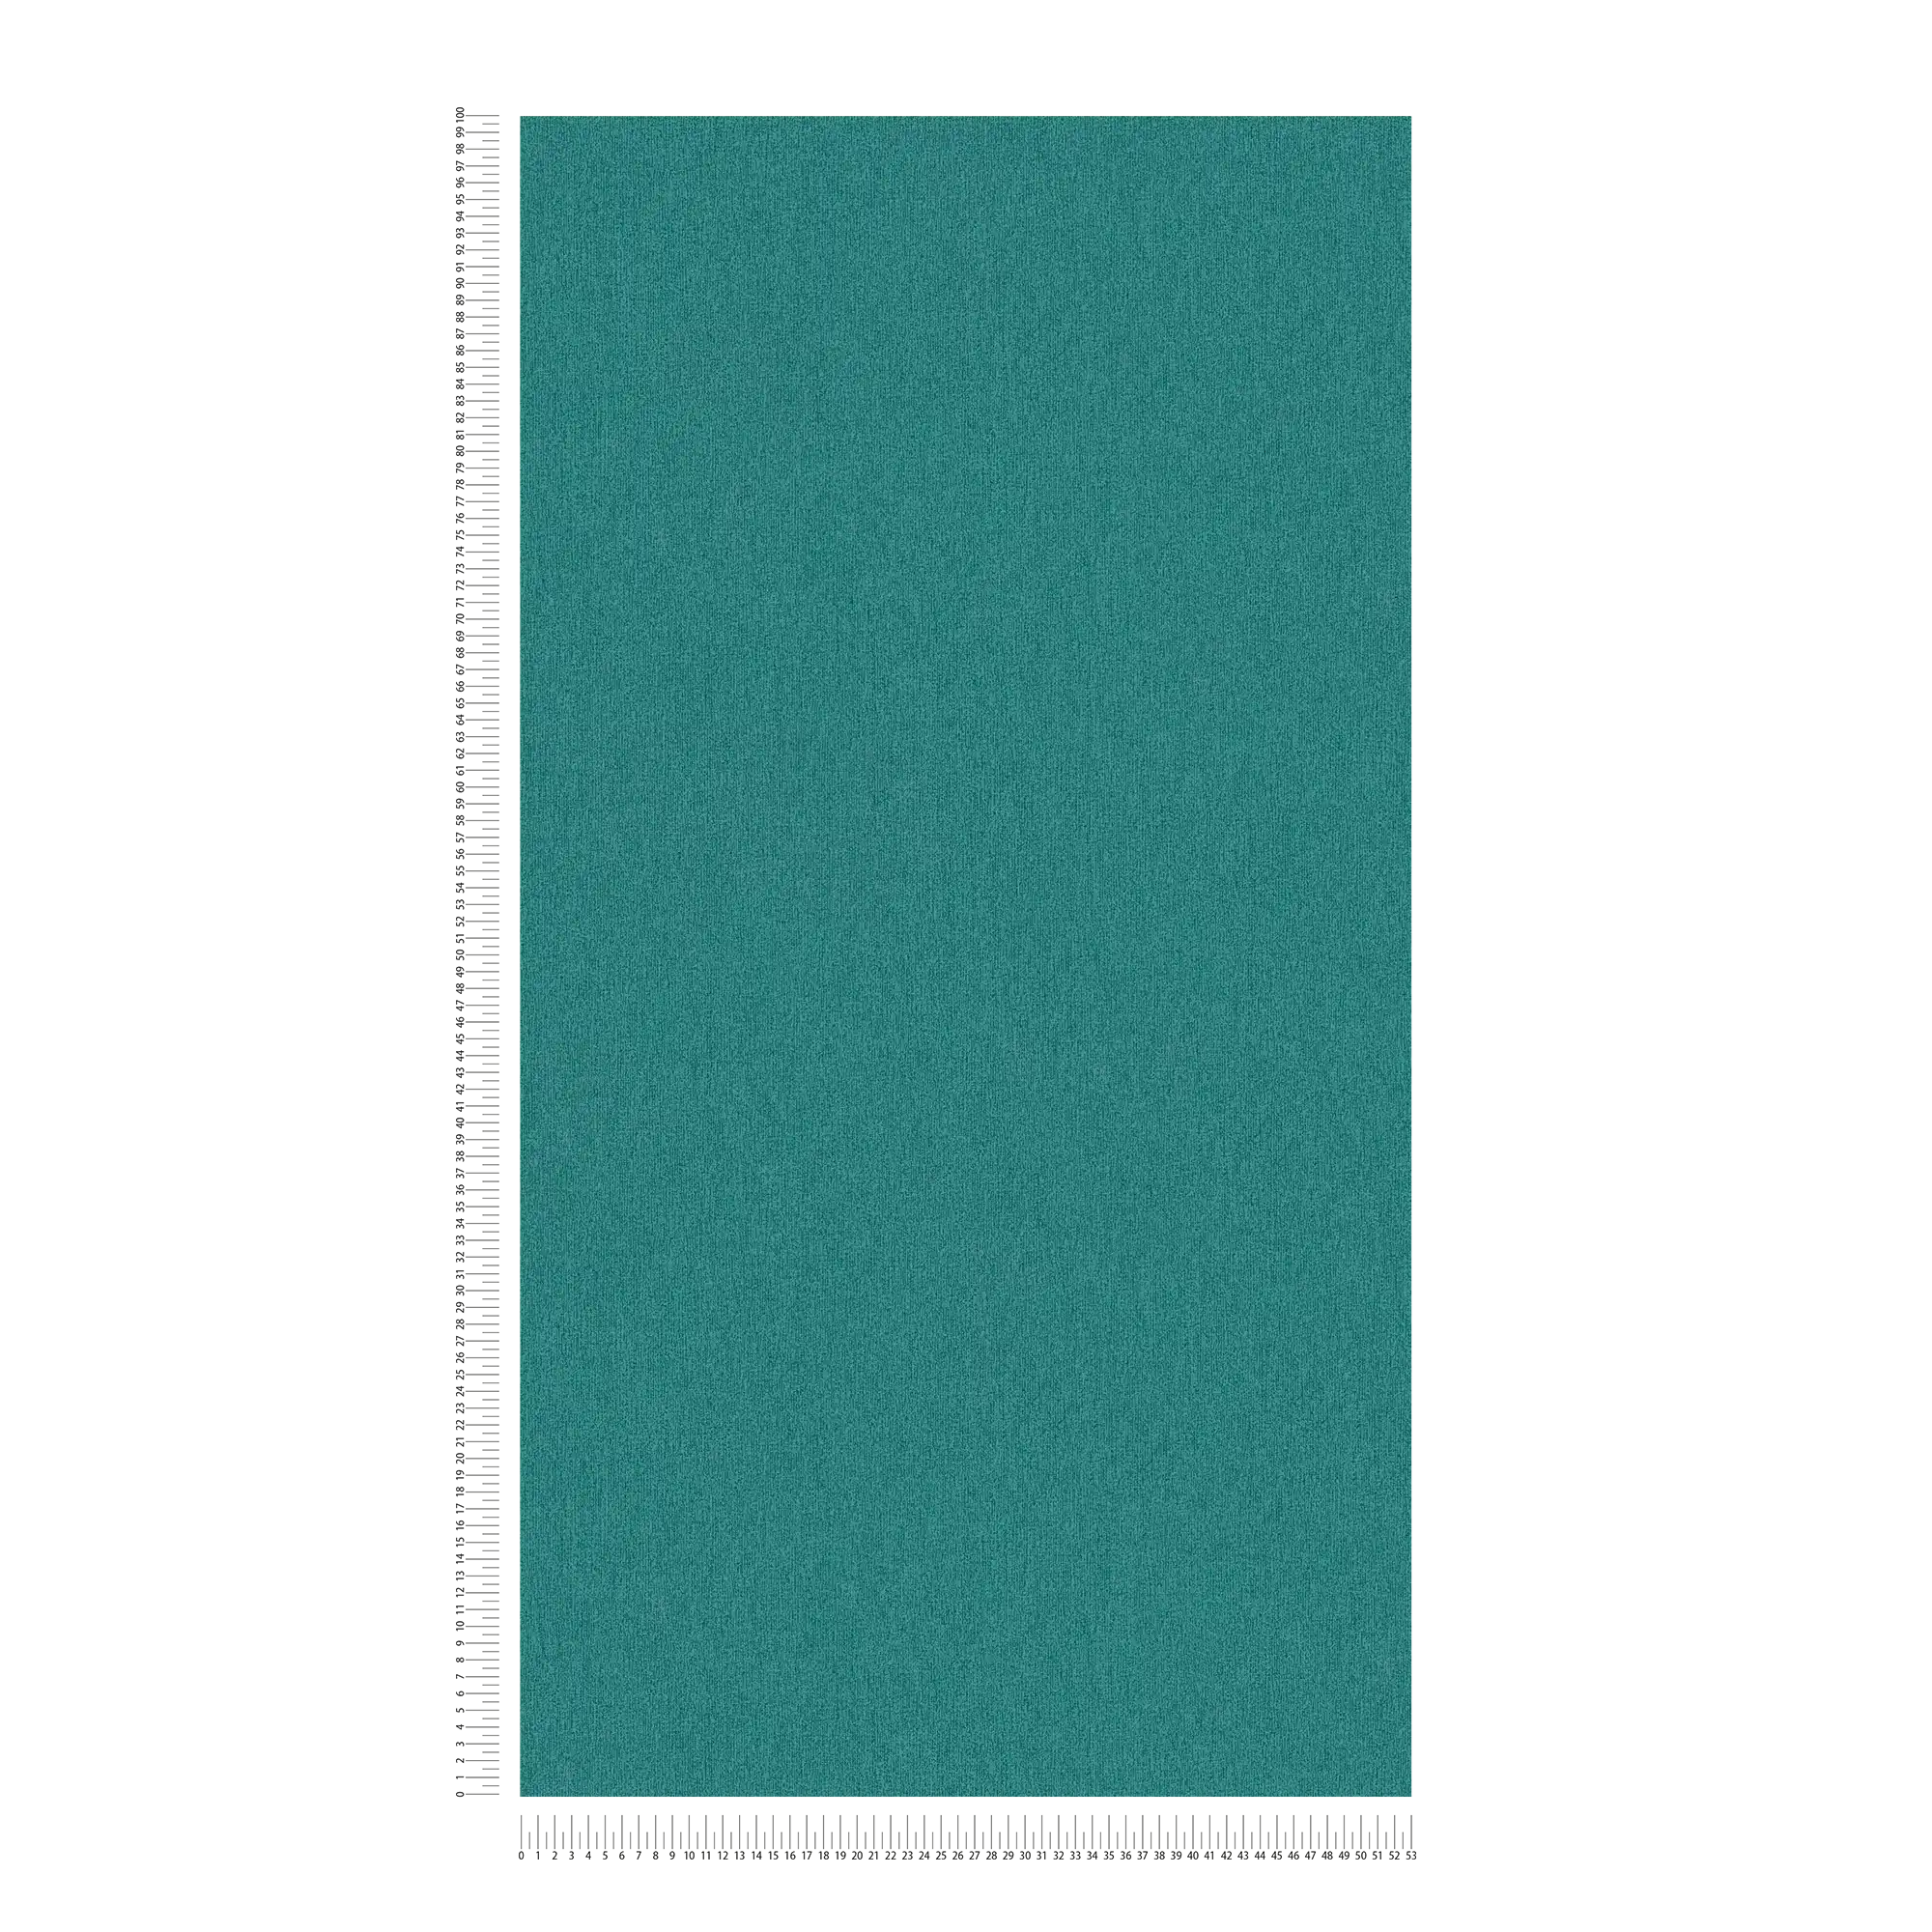             Papier peint uni mat & uni aspect structuré - pétrole, bleu
        